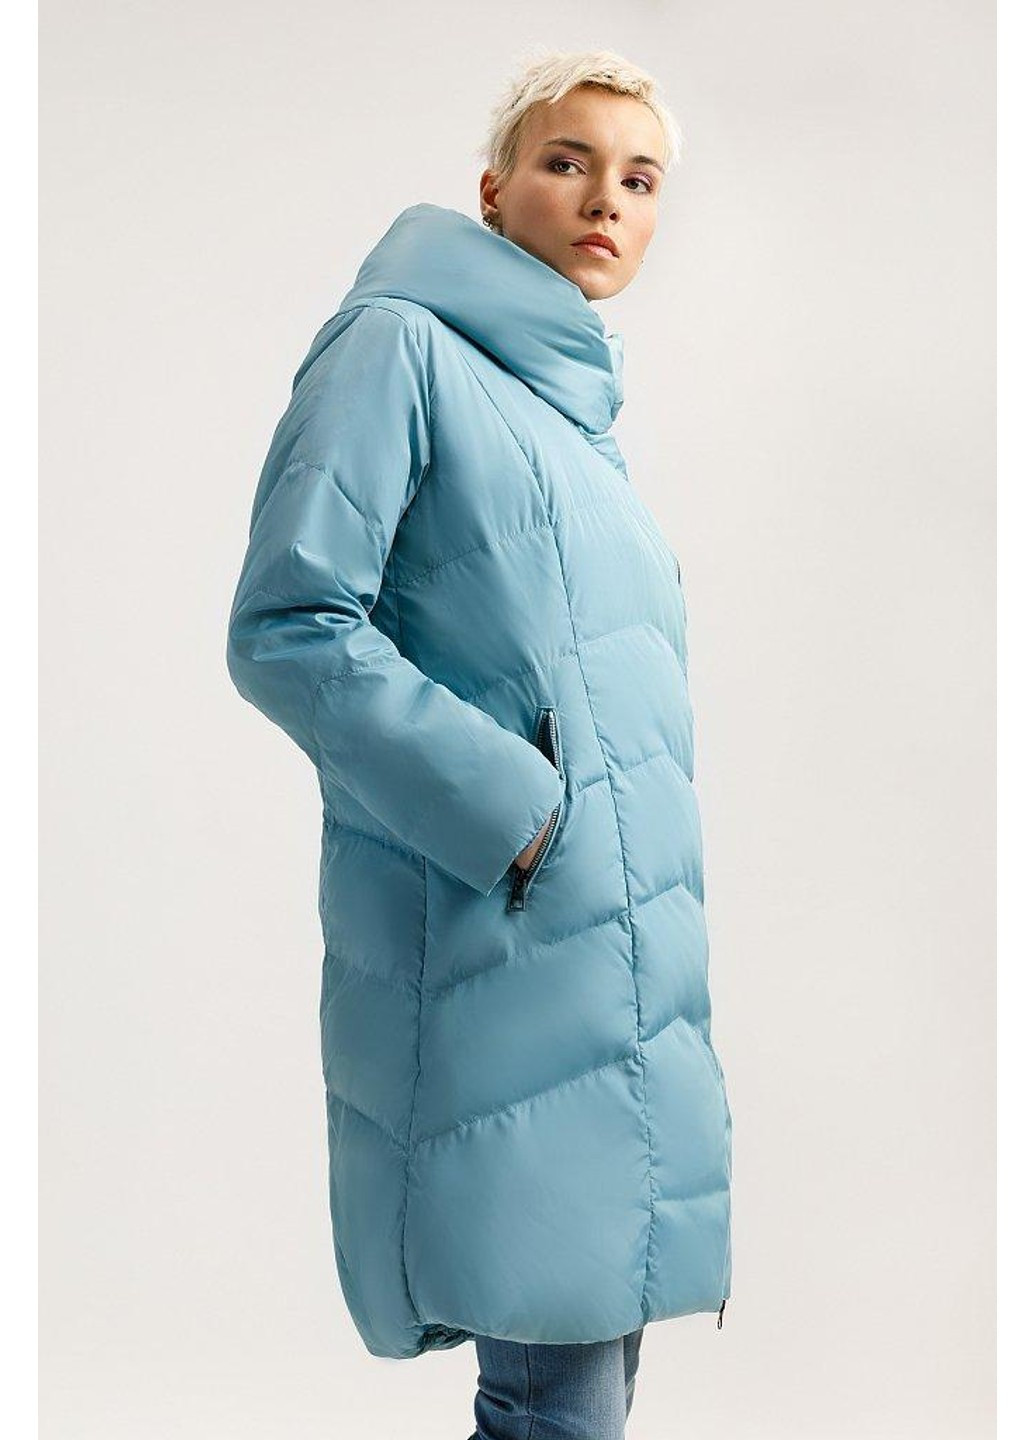 Блакитна зимня зимова куртка a19-11010-124 Finn Flare